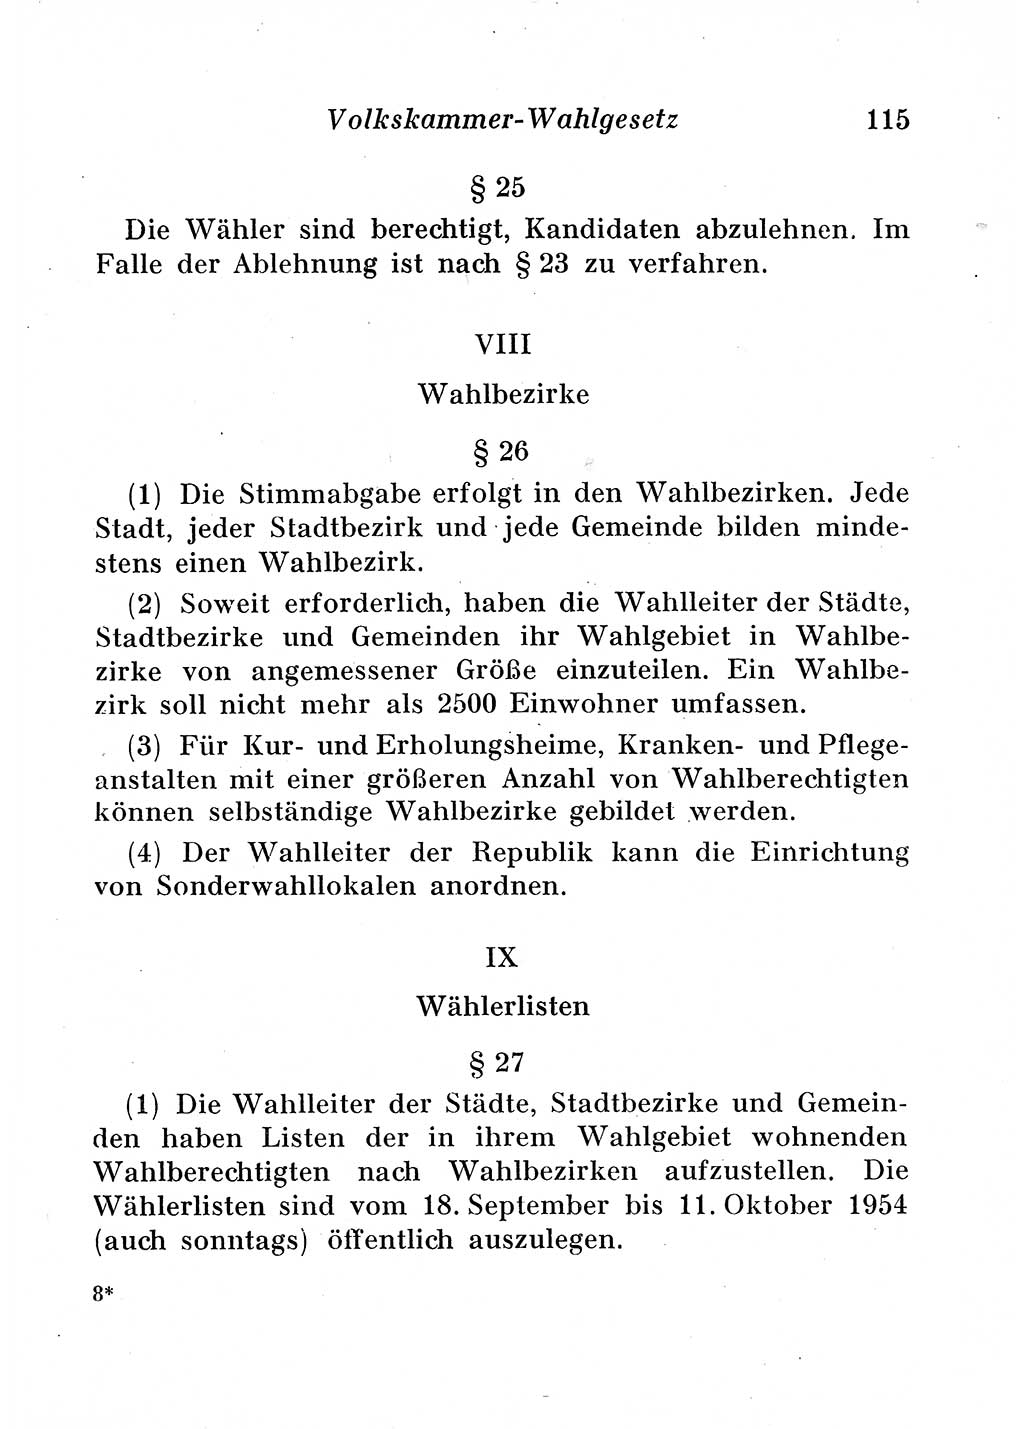 Staats- und verwaltungsrechtliche Gesetze der Deutschen Demokratischen Republik (DDR) 1958, Seite 115 (StVerwR Ges. DDR 1958, S. 115)